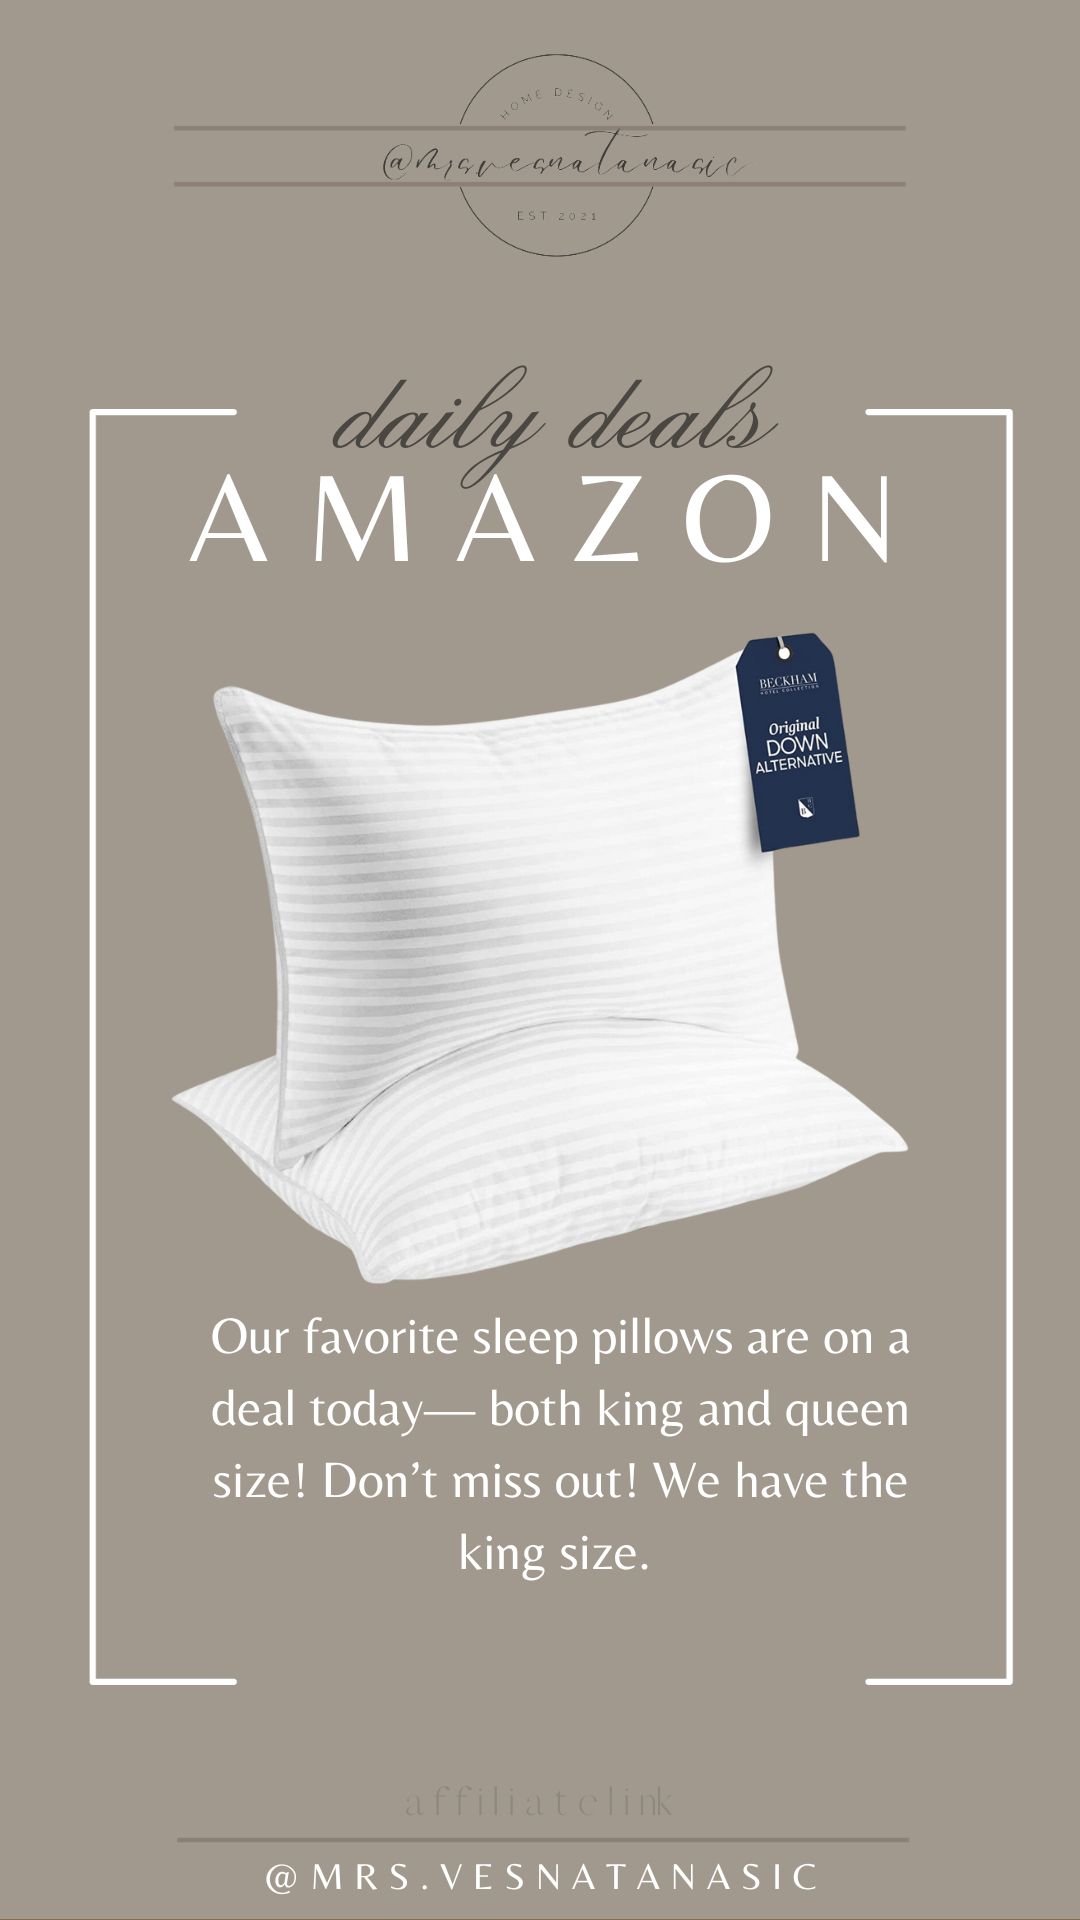 My favorite sleep pillows are on sale! | Amazon (US)